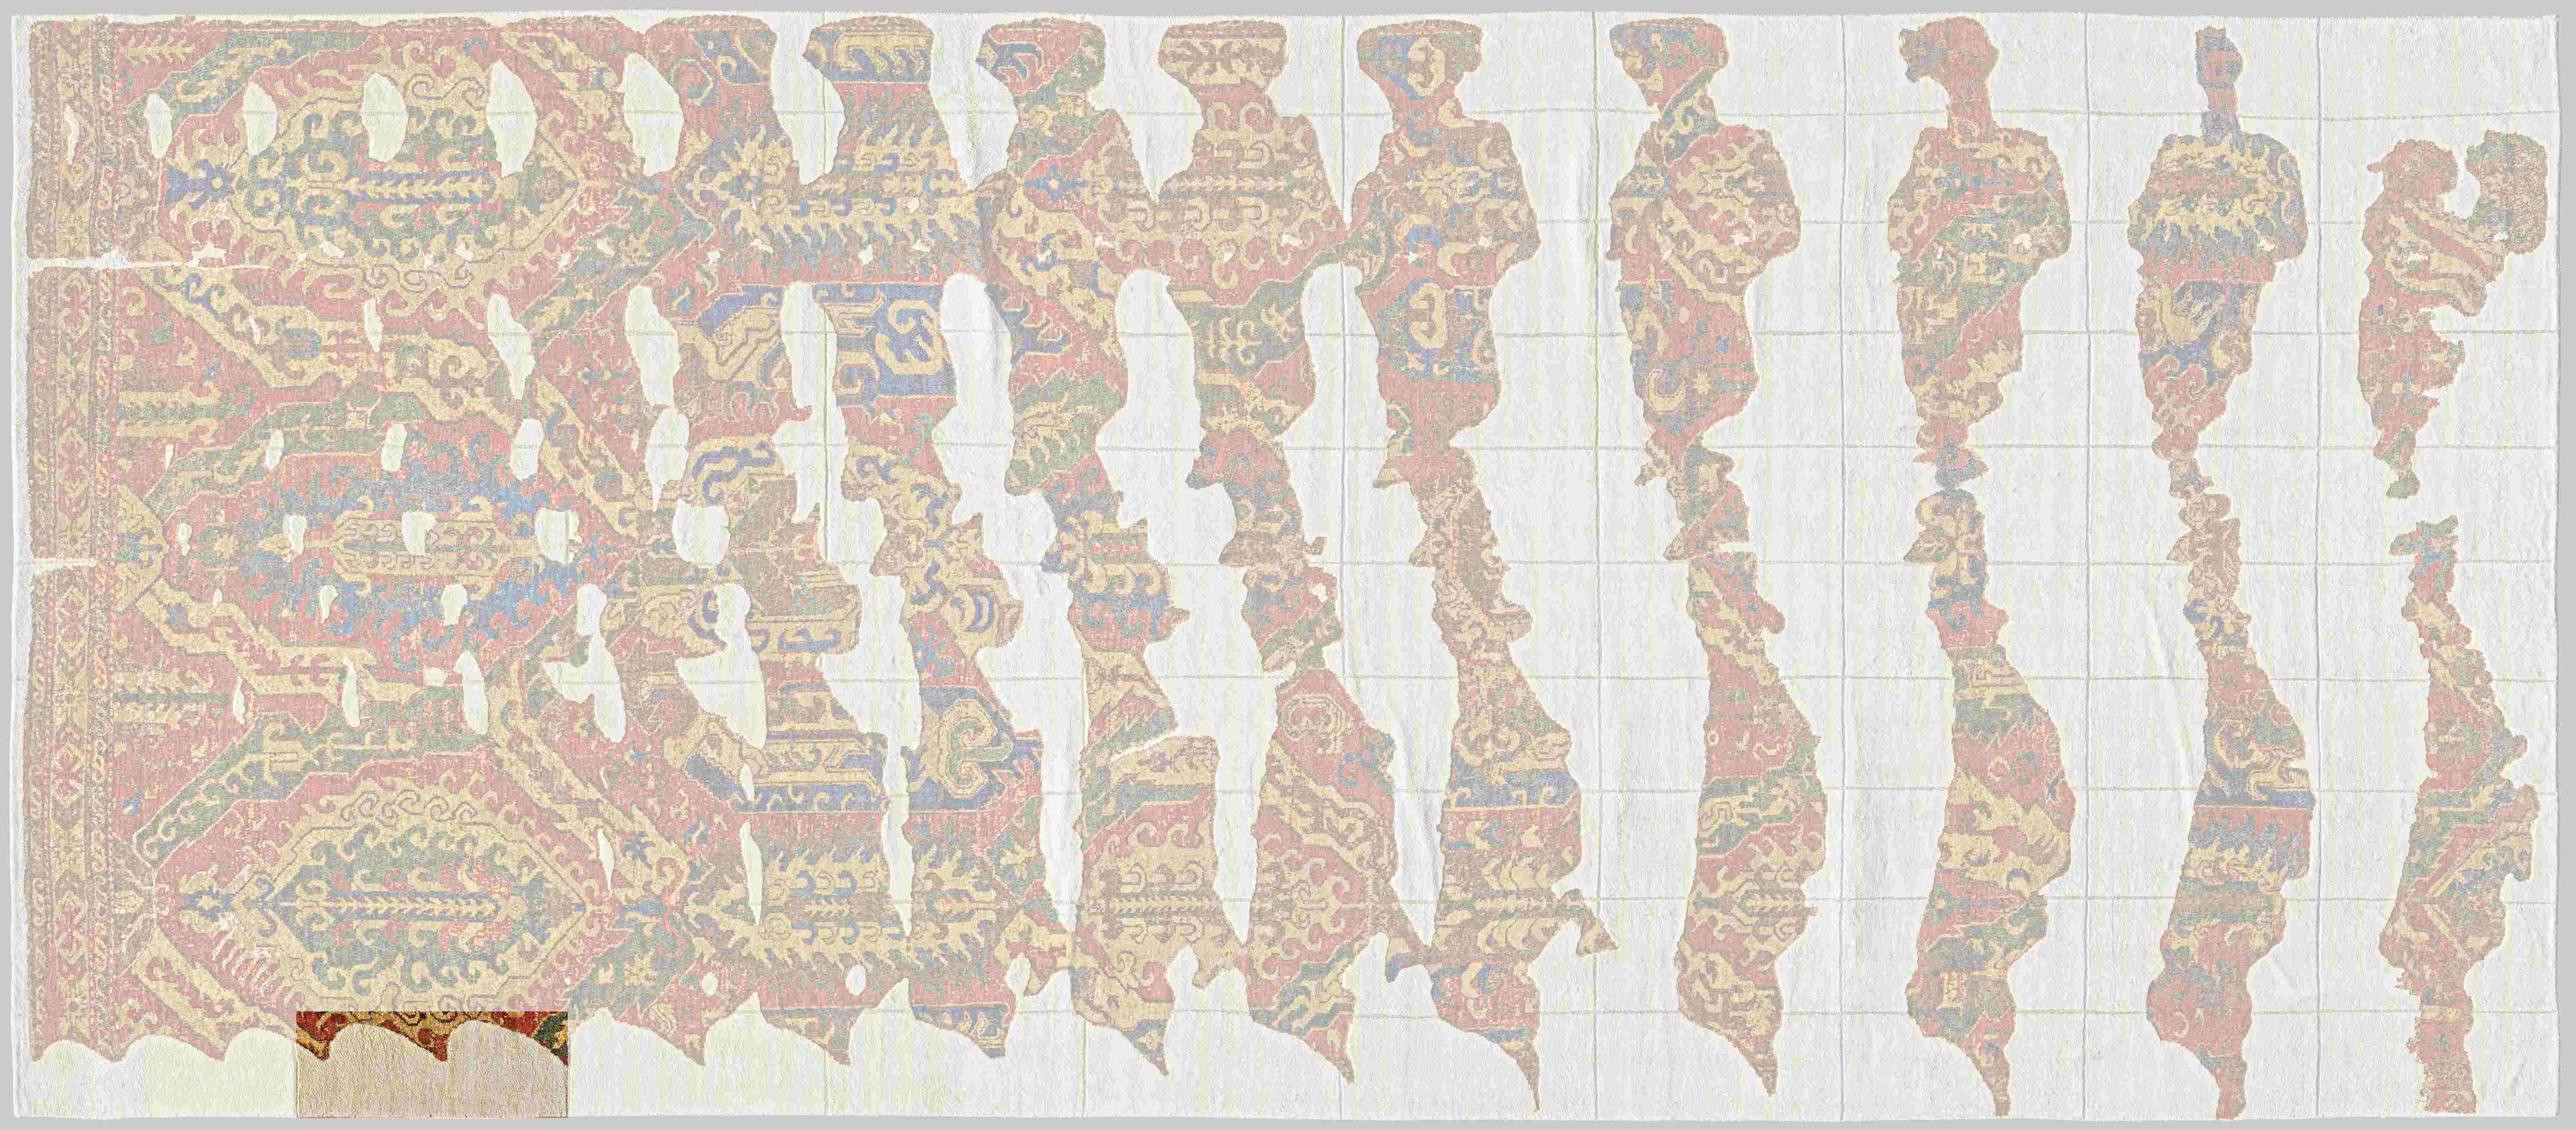 CulturalxCollabs: Fragment No. 11 highlighted © Museum für Islamische Kunst, Heiner Büld